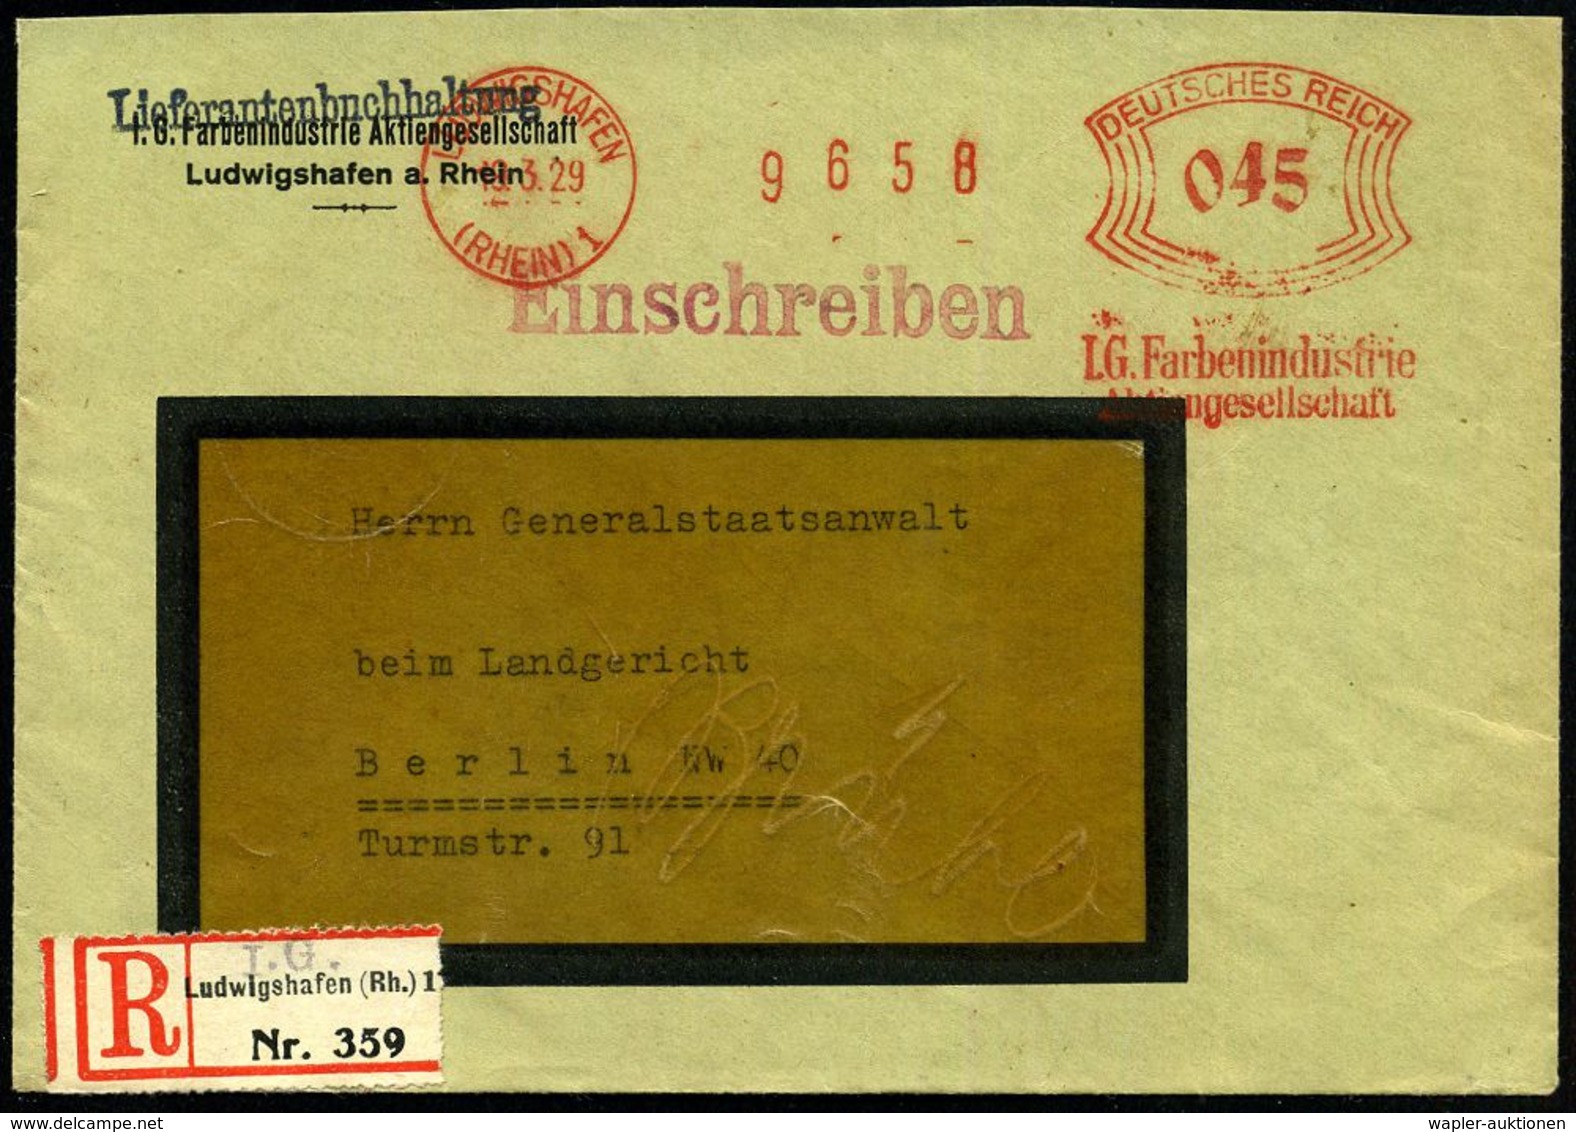 LUDWIGSHAFEN/ (RHEIN) 1/ I.G. Farbenindustrie/ AG 1929 (19.3.) AFS 045 Pf. + Provis. Firmen-RZ: Ludwigshafen (Rh.) 1/ I. - Chimica